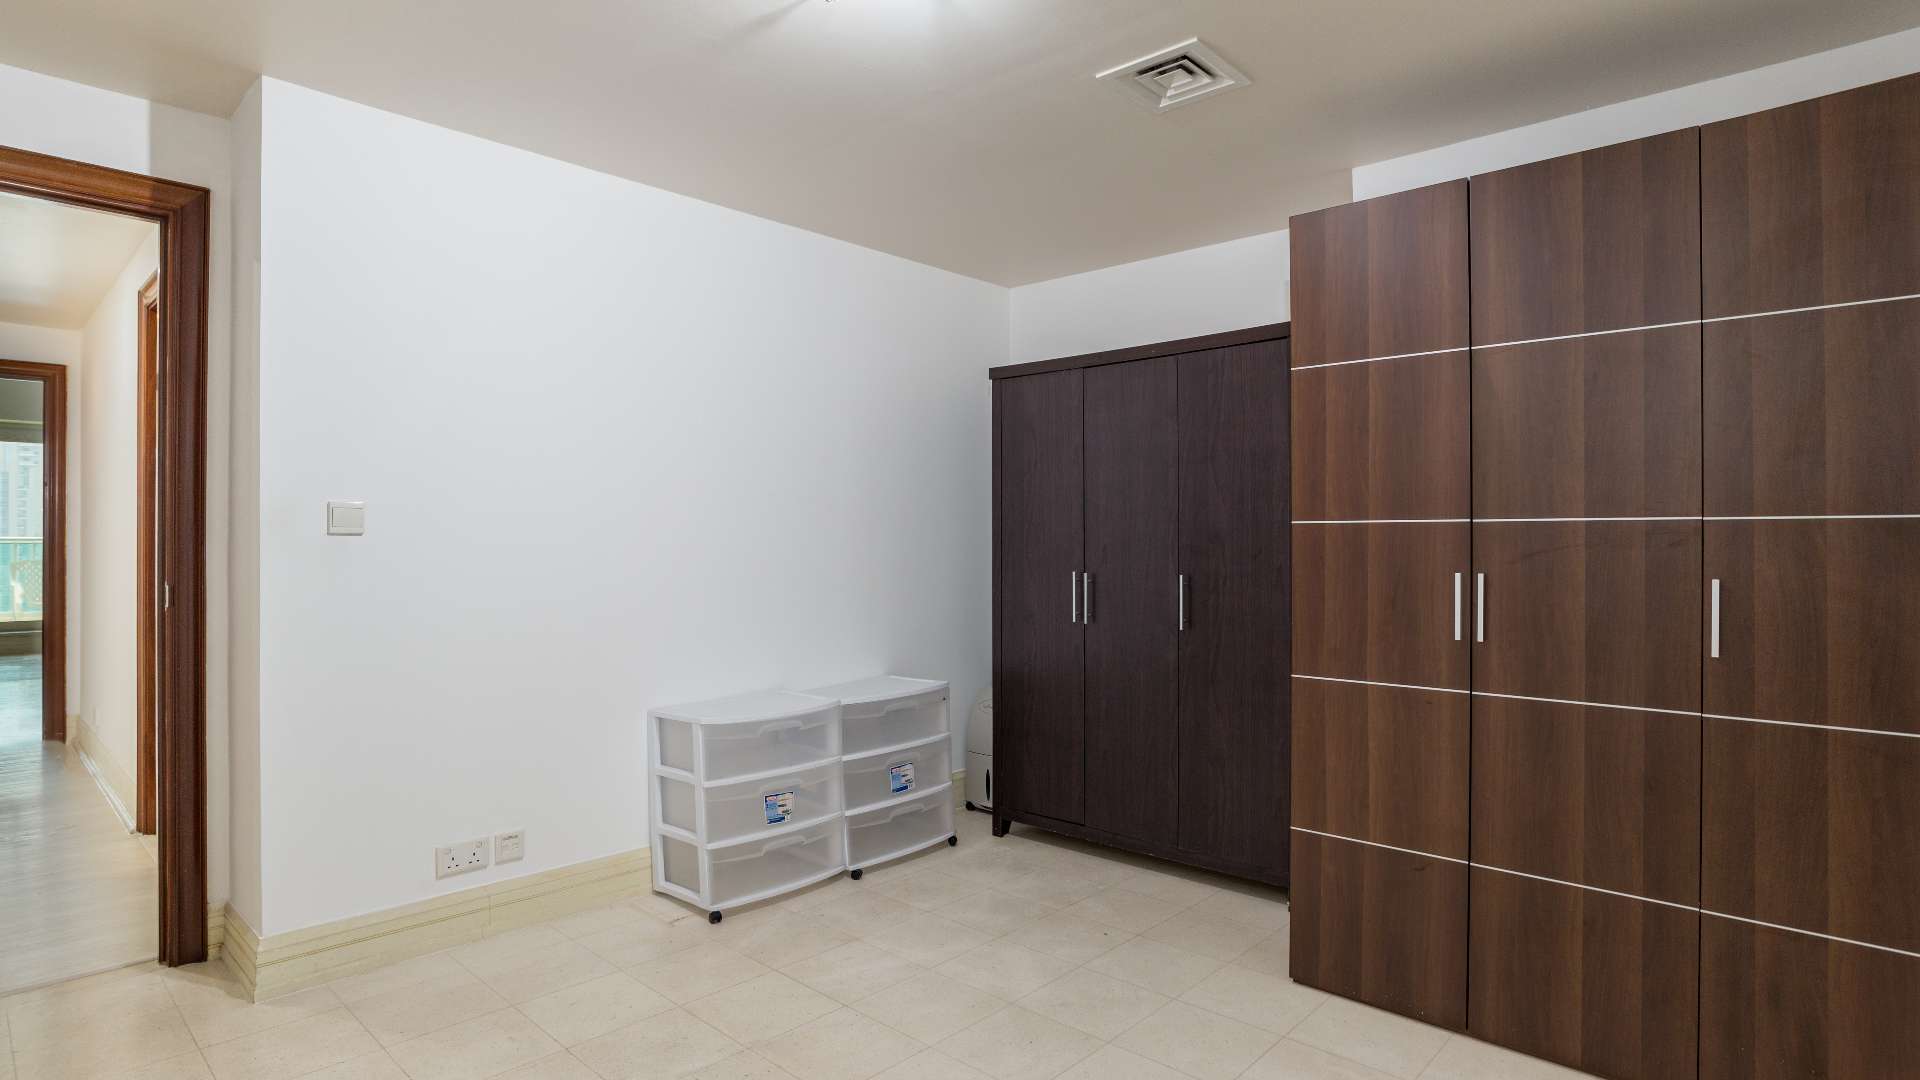 1 Bedroom Apartment For Rent Al Murjan Lp07450 15efcb96e5924b00.jpg